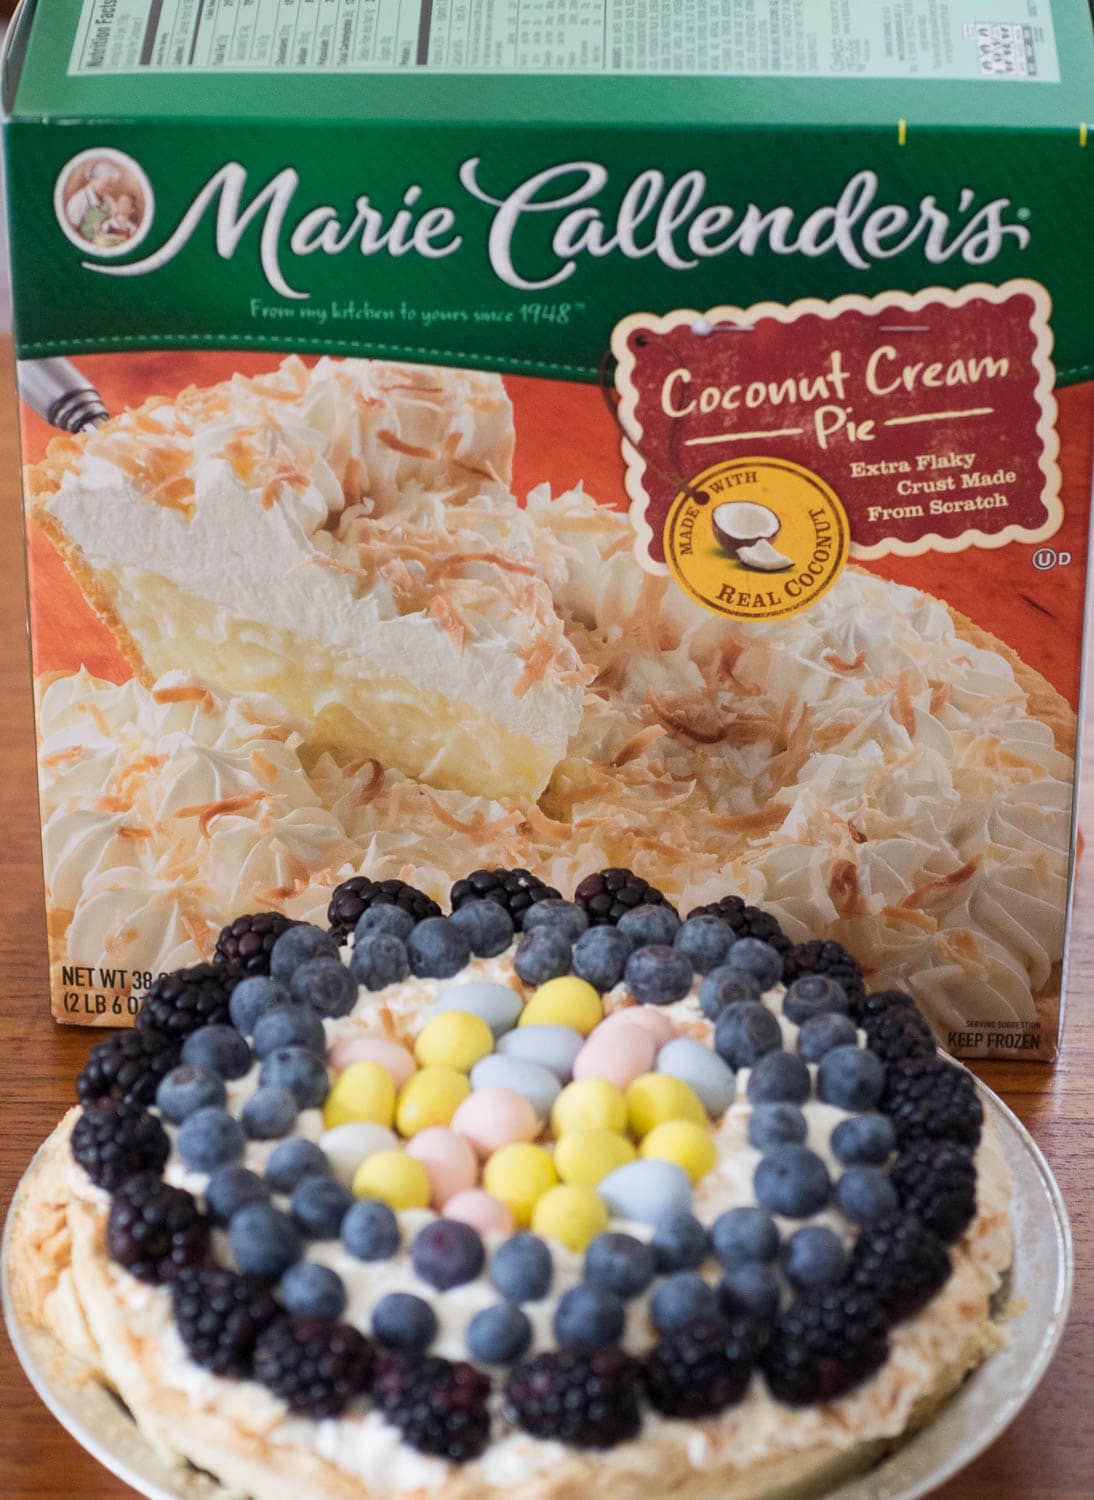 Marie Callender's Spring Coconut Cream Pie.